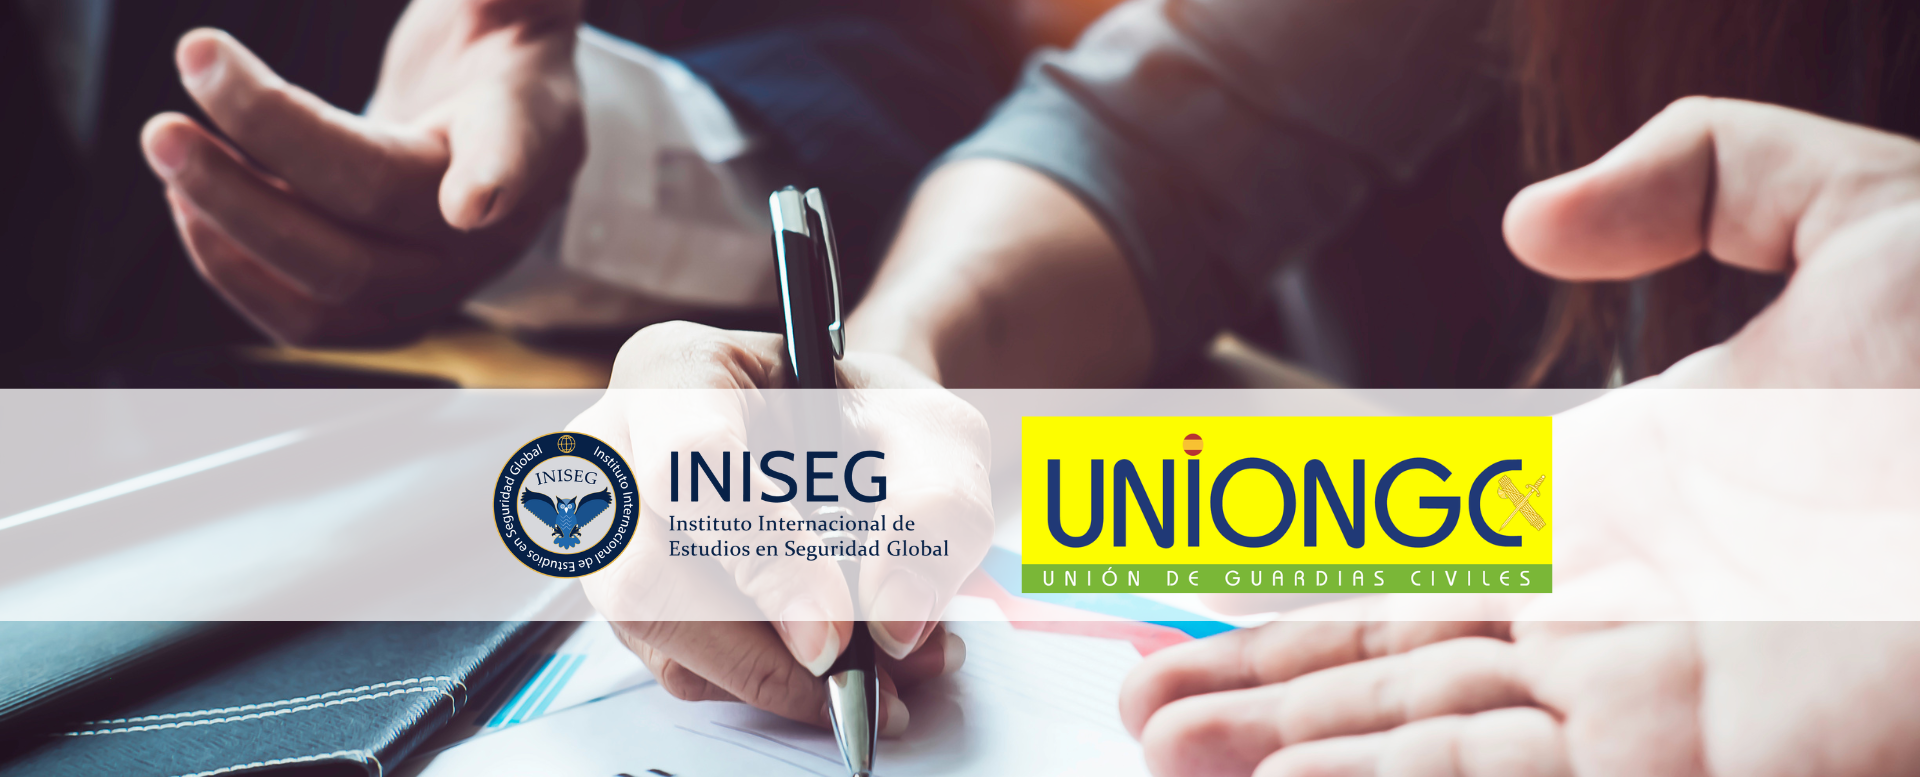 INISEG Continua con su compromiso de Excelencia, con una Nueva Colaboración entre con la Asociación Profesional Unión de Guardias Civiles